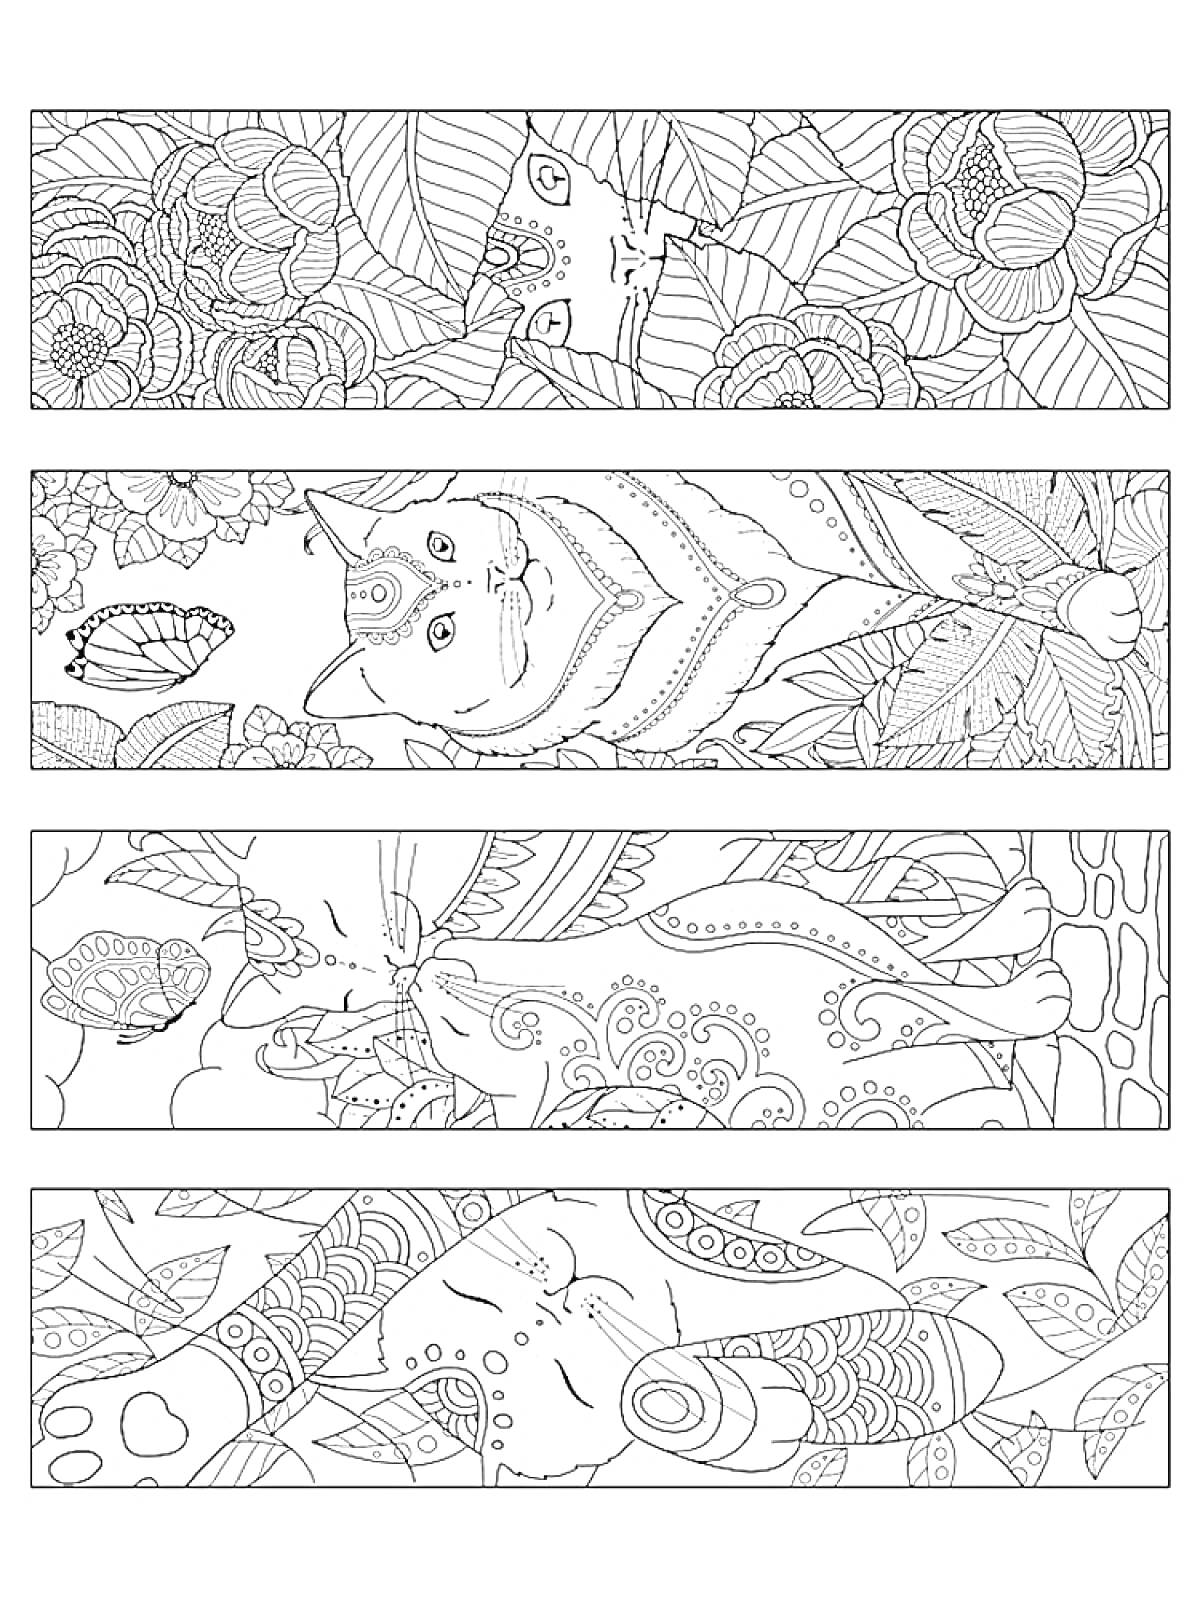 РаскраскаЗакладки с кошками и бабочками в окружении цветов и листьев